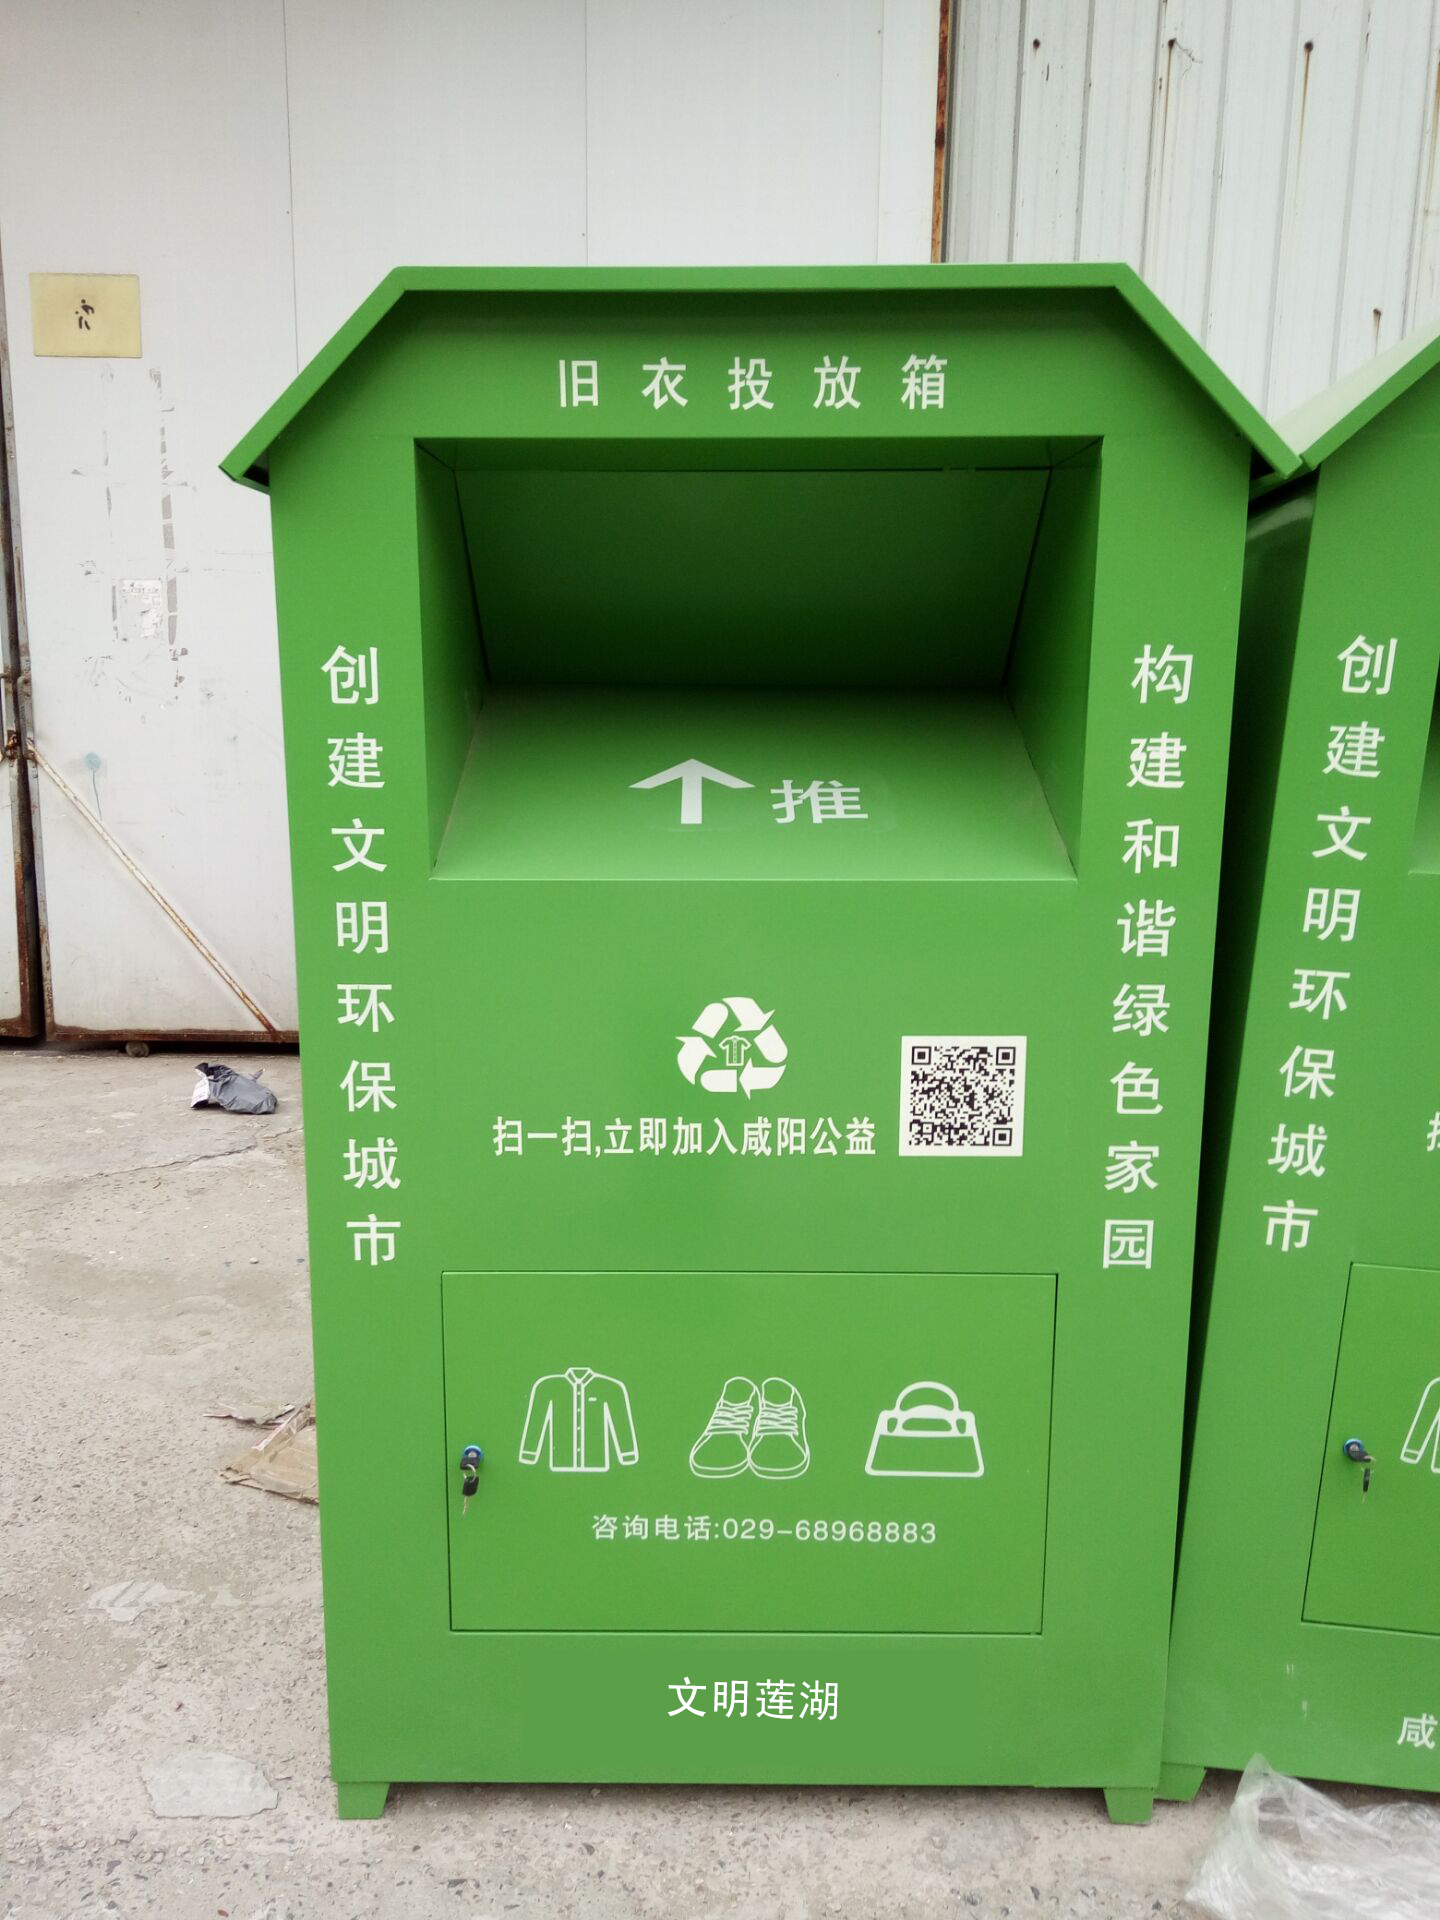 南京腾飞柜台货架厂专业生产工作服回收箱  旧衣服回收箱